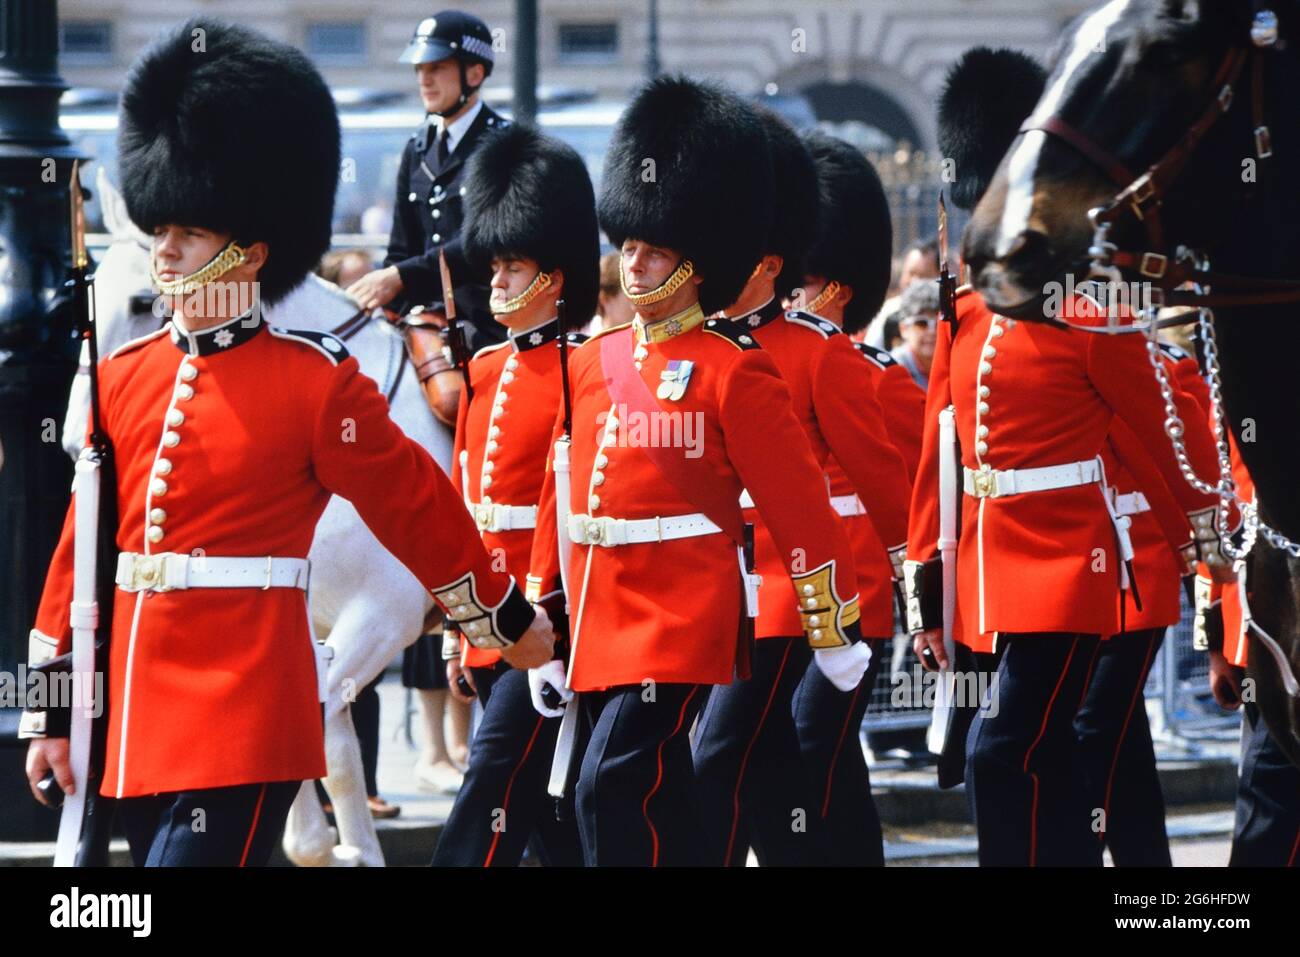 Marching Coldstream Guards, les soldats portant des chapeaux de barbes et  des tuniques rouges au changement de la Garde. Buckingham Palace, Londres,  Angleterre, Royaume-Uni. Vers les années 1980 Photo Stock - Alamy